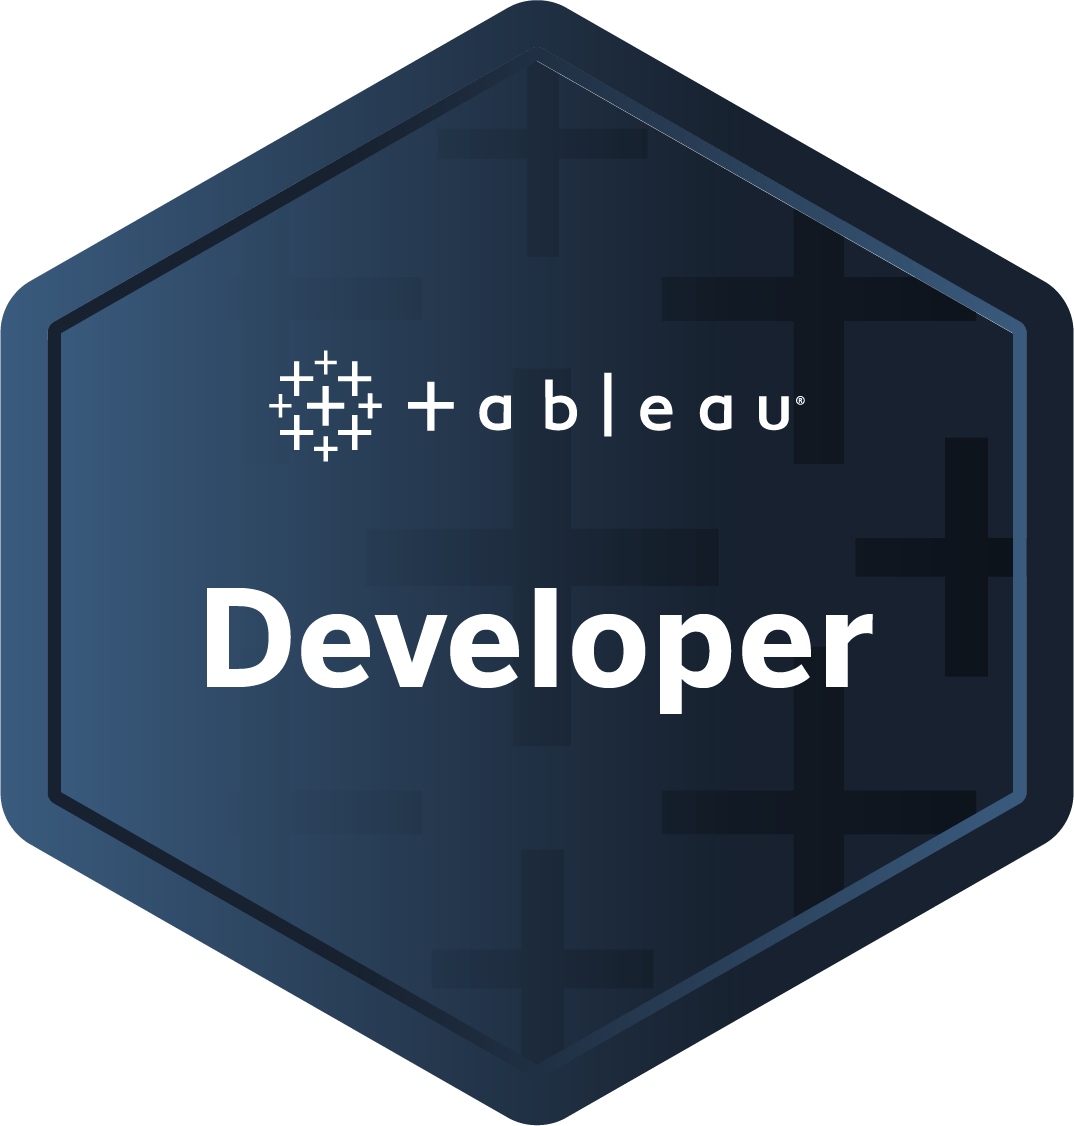  Tableau Certified Developer